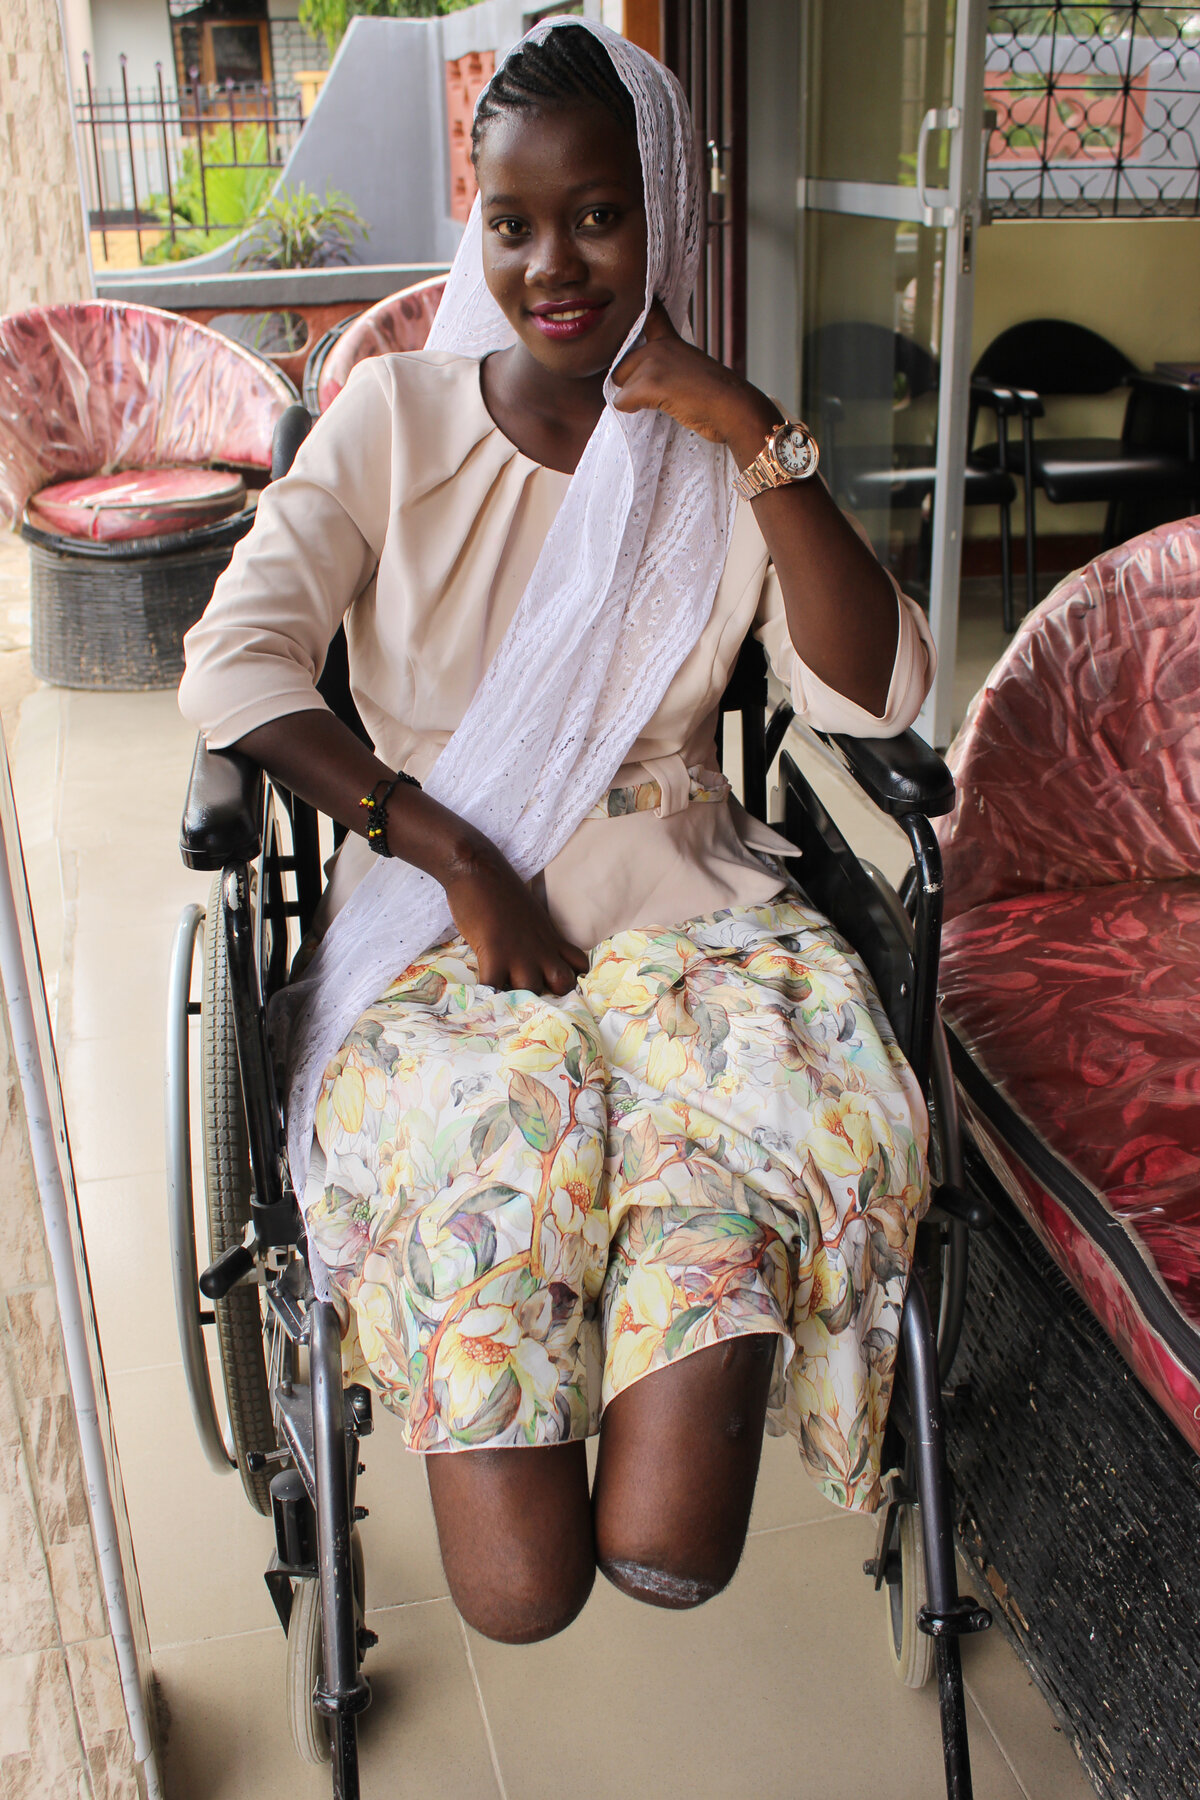 Asia, 20 ans, de Mwanza, Tanzanie : amputée bilatérale sans 9 doigts, elle a commencé à travailler dans un projet SwissLimbs pour motiver d'autres personnes handicapées à reprendre espoir. Photo : © SwissLimbs